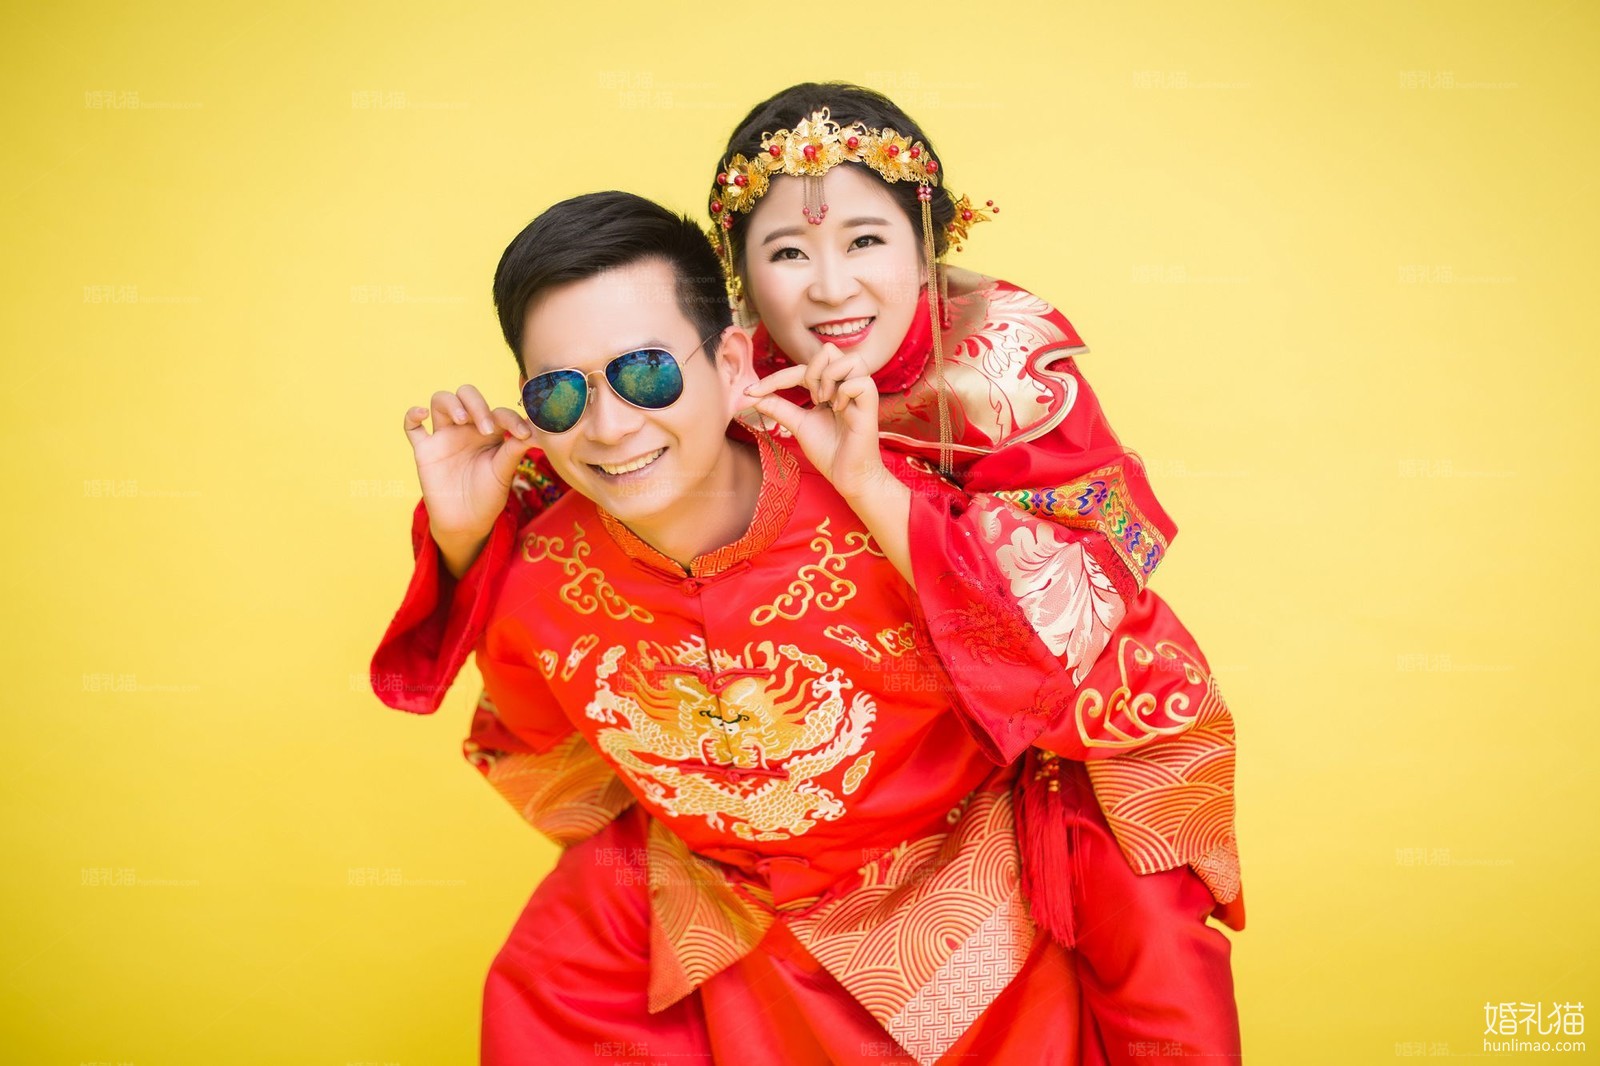 中国风婚纱照图片|纯色背景结婚照,[中国风, 纯色背景],佛山婚纱照,婚纱照图片